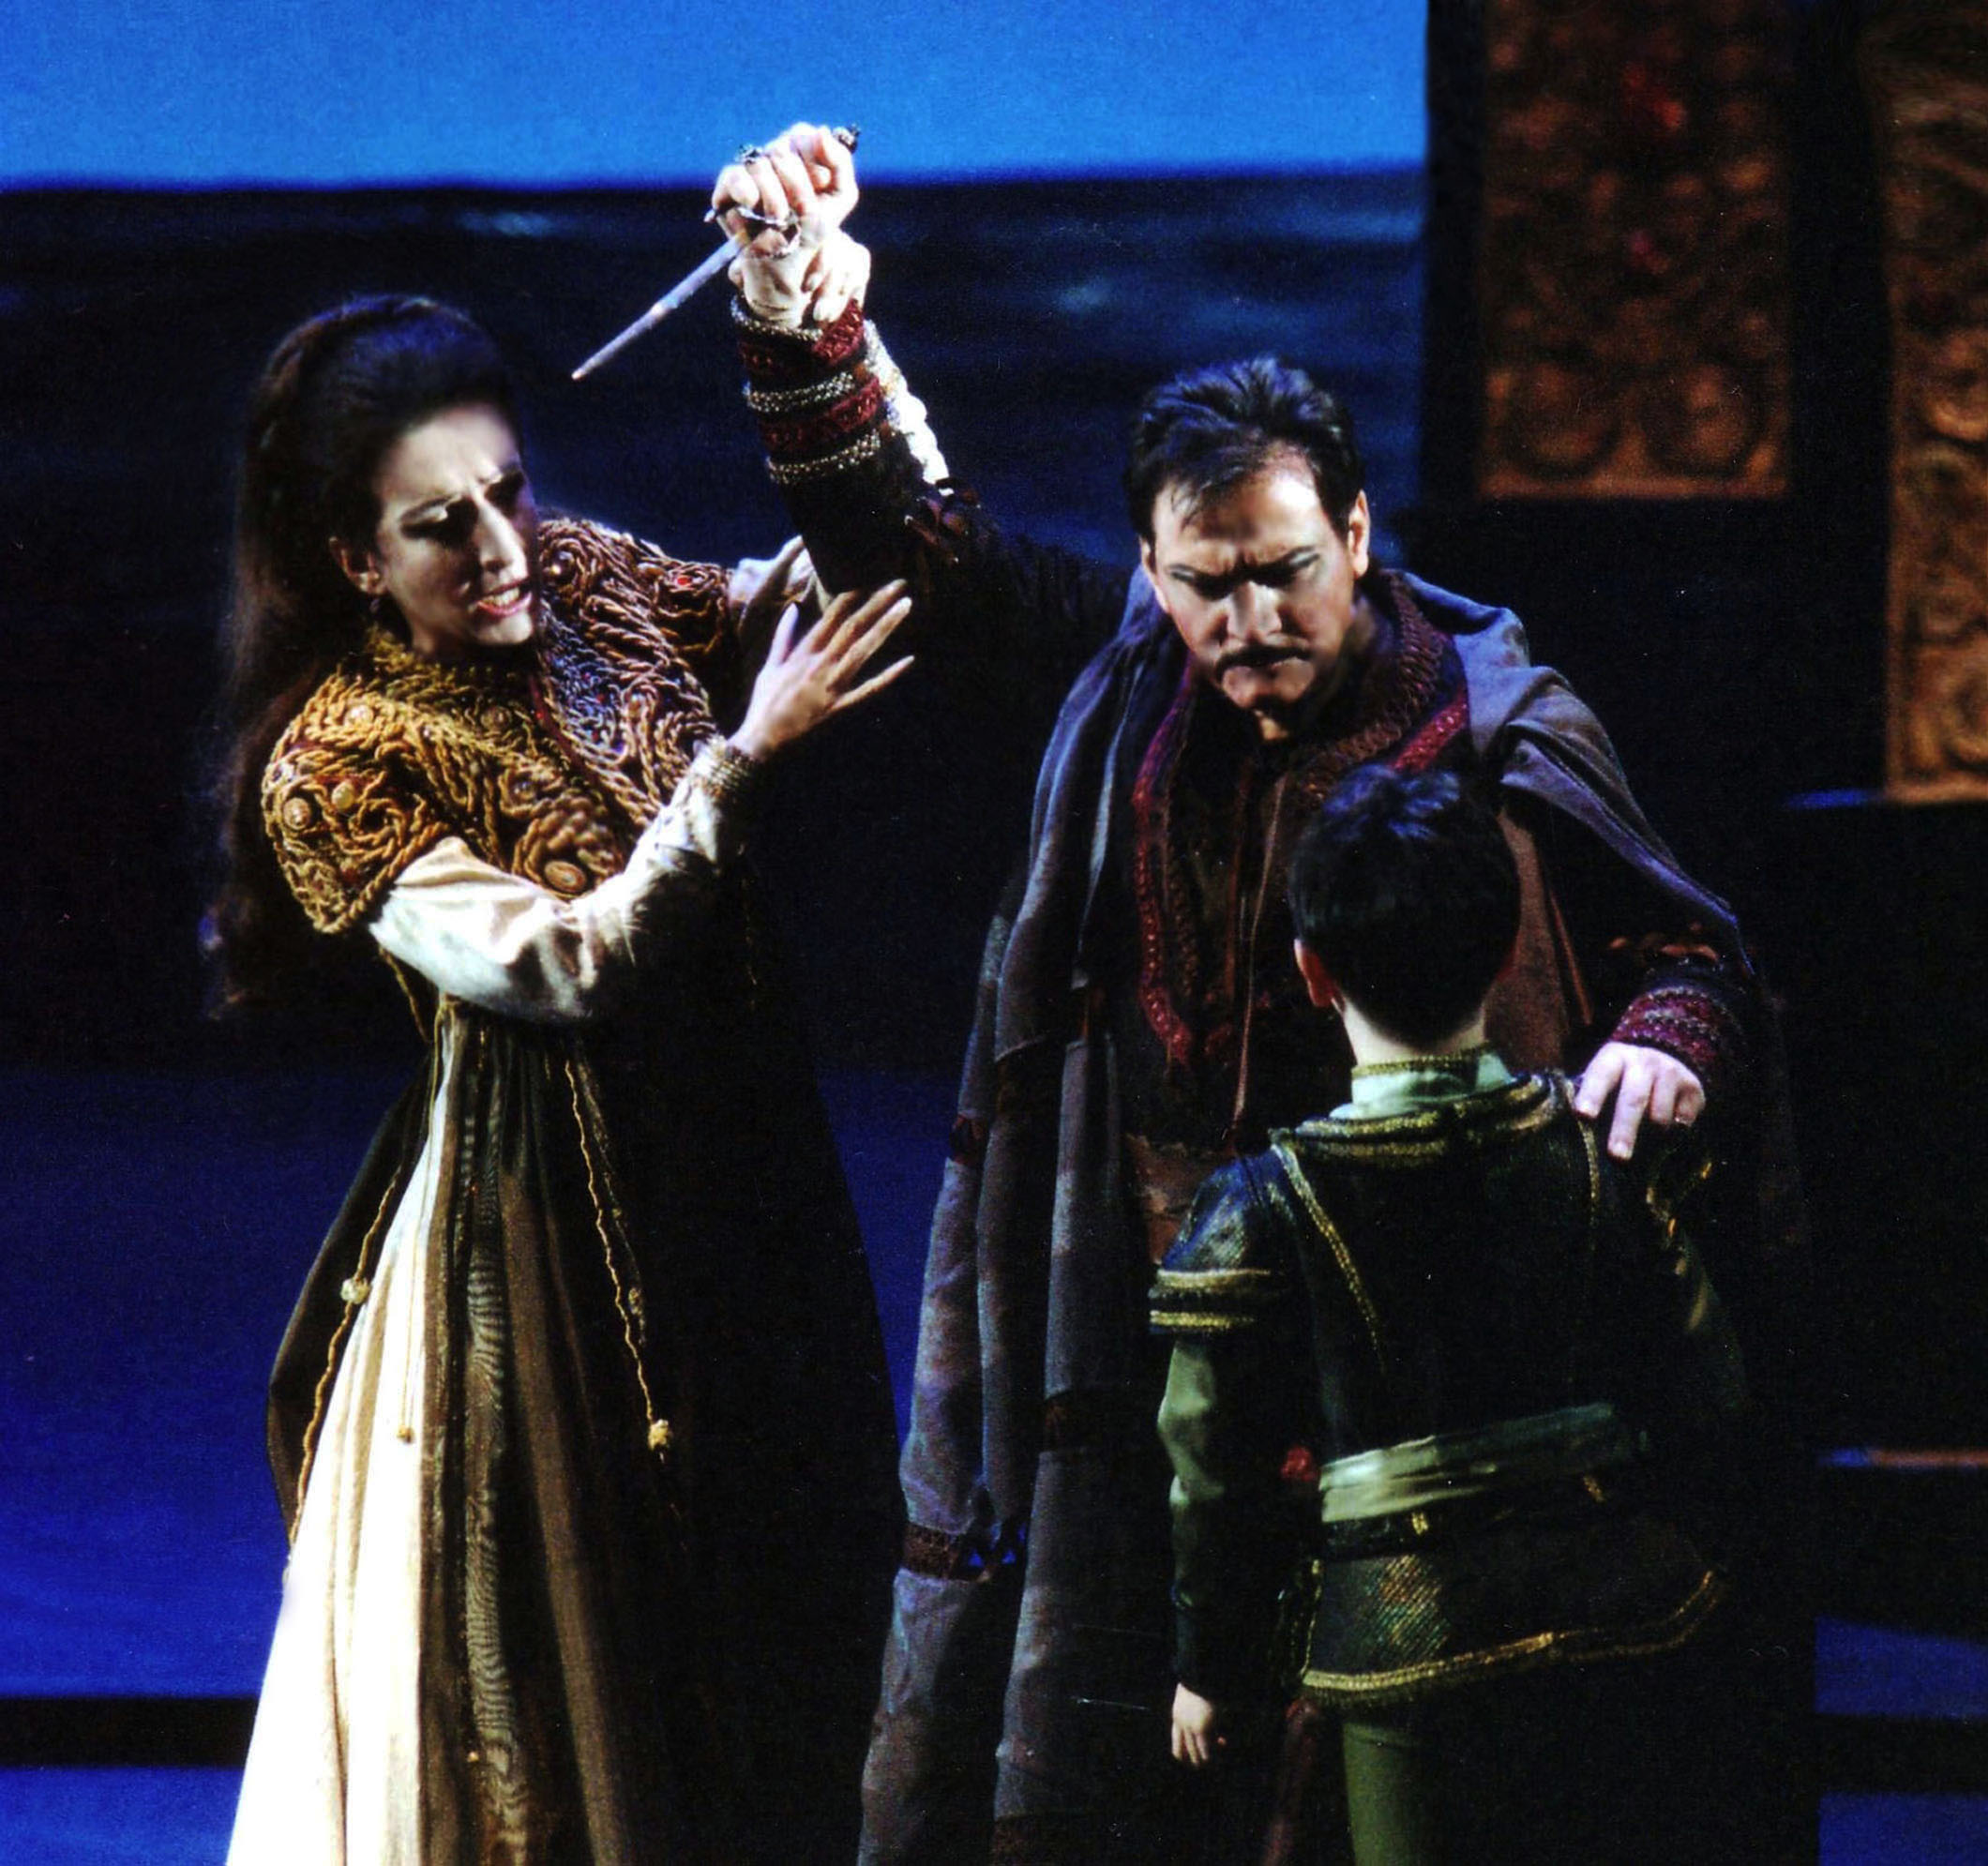 Lucia Aliberti with the tenor Salvatore Fisichella⚘Opera⚘"Il Pirata"⚘Teatro Bellini⚘Catania⚘On Stage⚘Photo taken from the Video⚘:http://www.luciaaliberti.it #luciaaliberti #salvatorefisichella #teatroobellini #catania #ilpirata #opera #onstage #video #tvnews